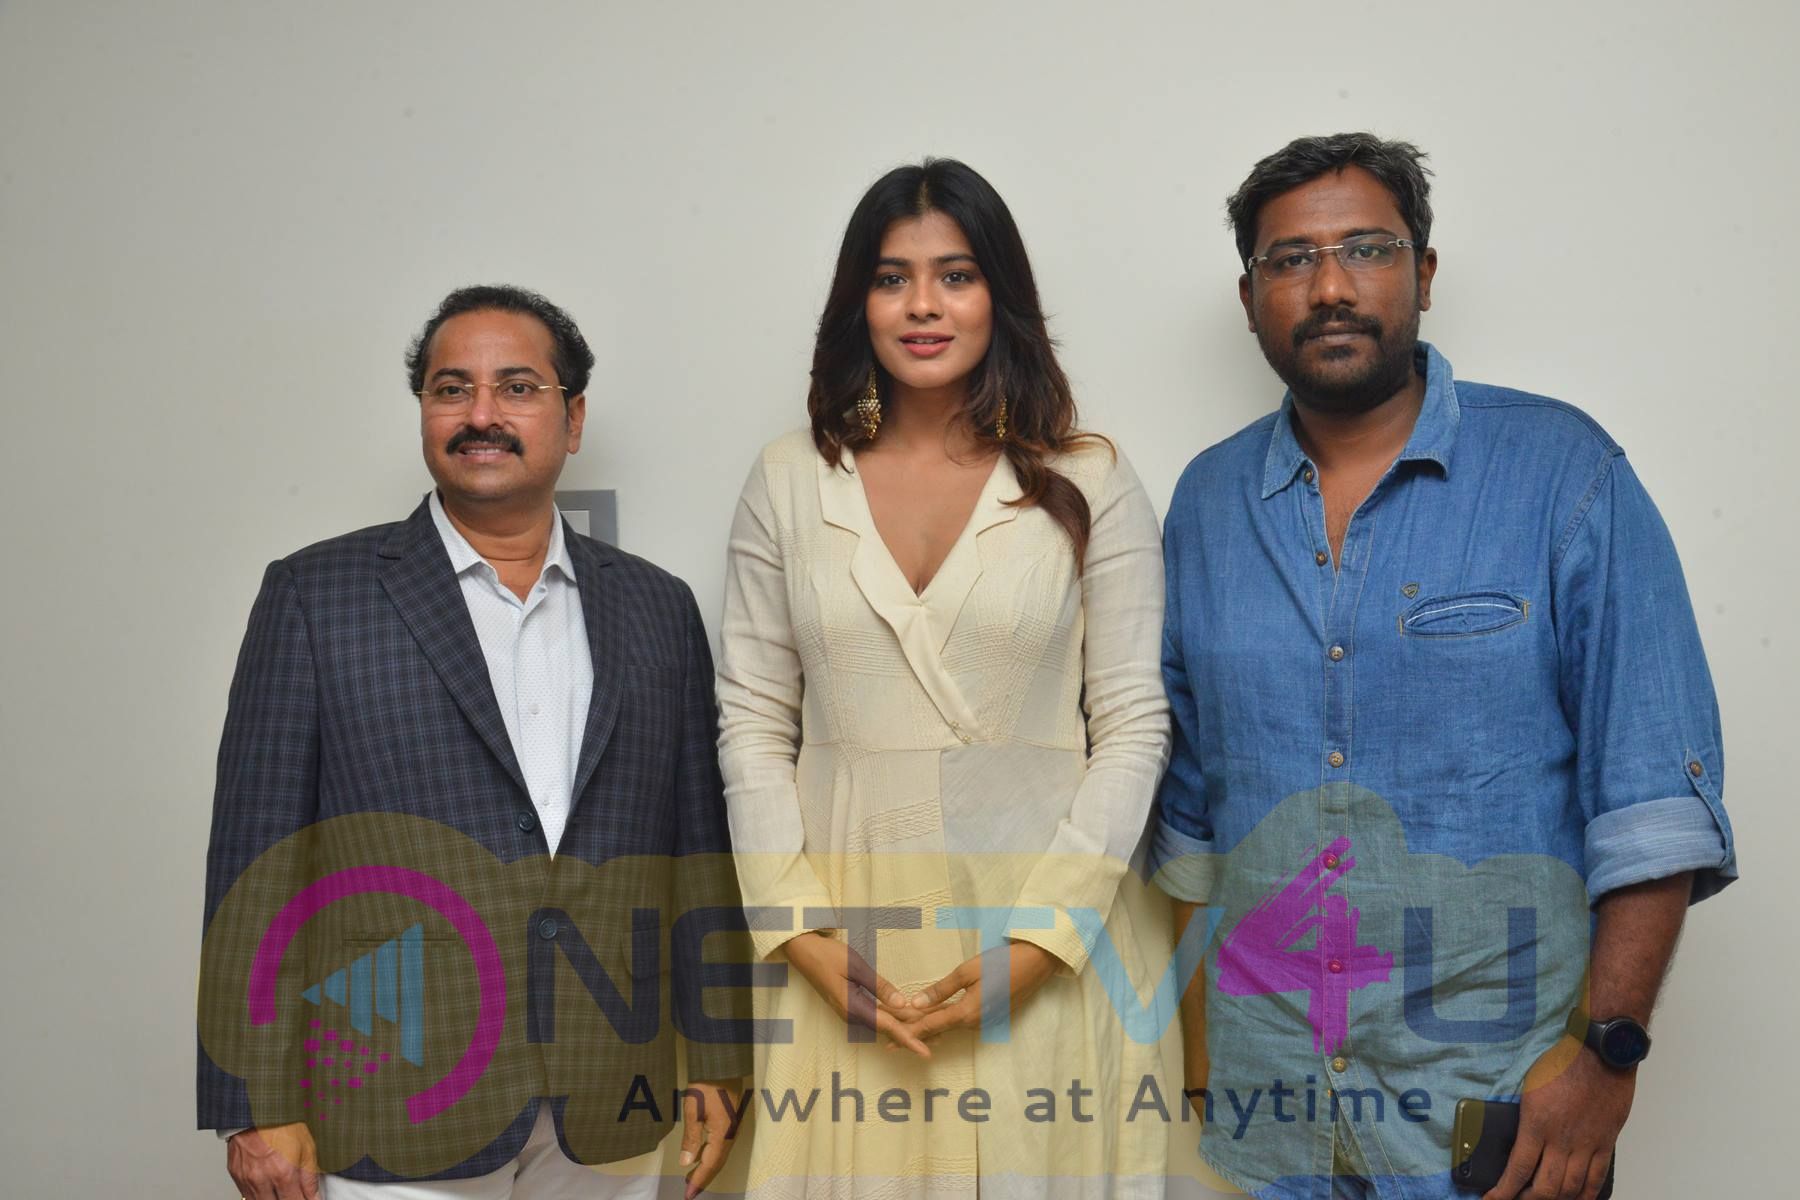 Hebah Patel Launches B New Mobile Store At Tenali Pics Telugu Gallery